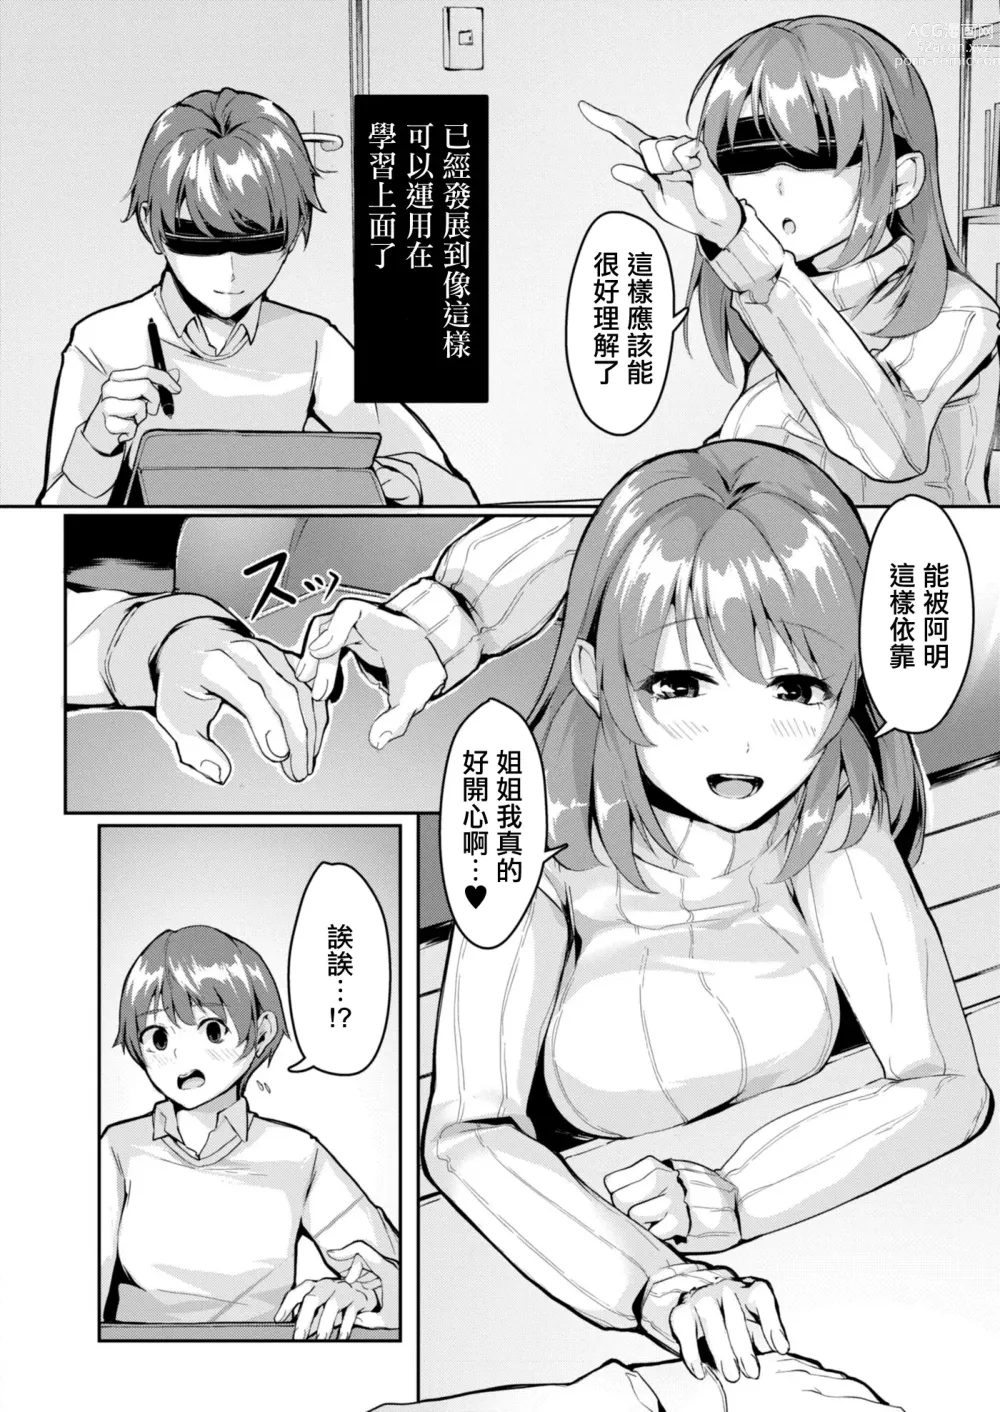 Page 2 of manga 突發邪念